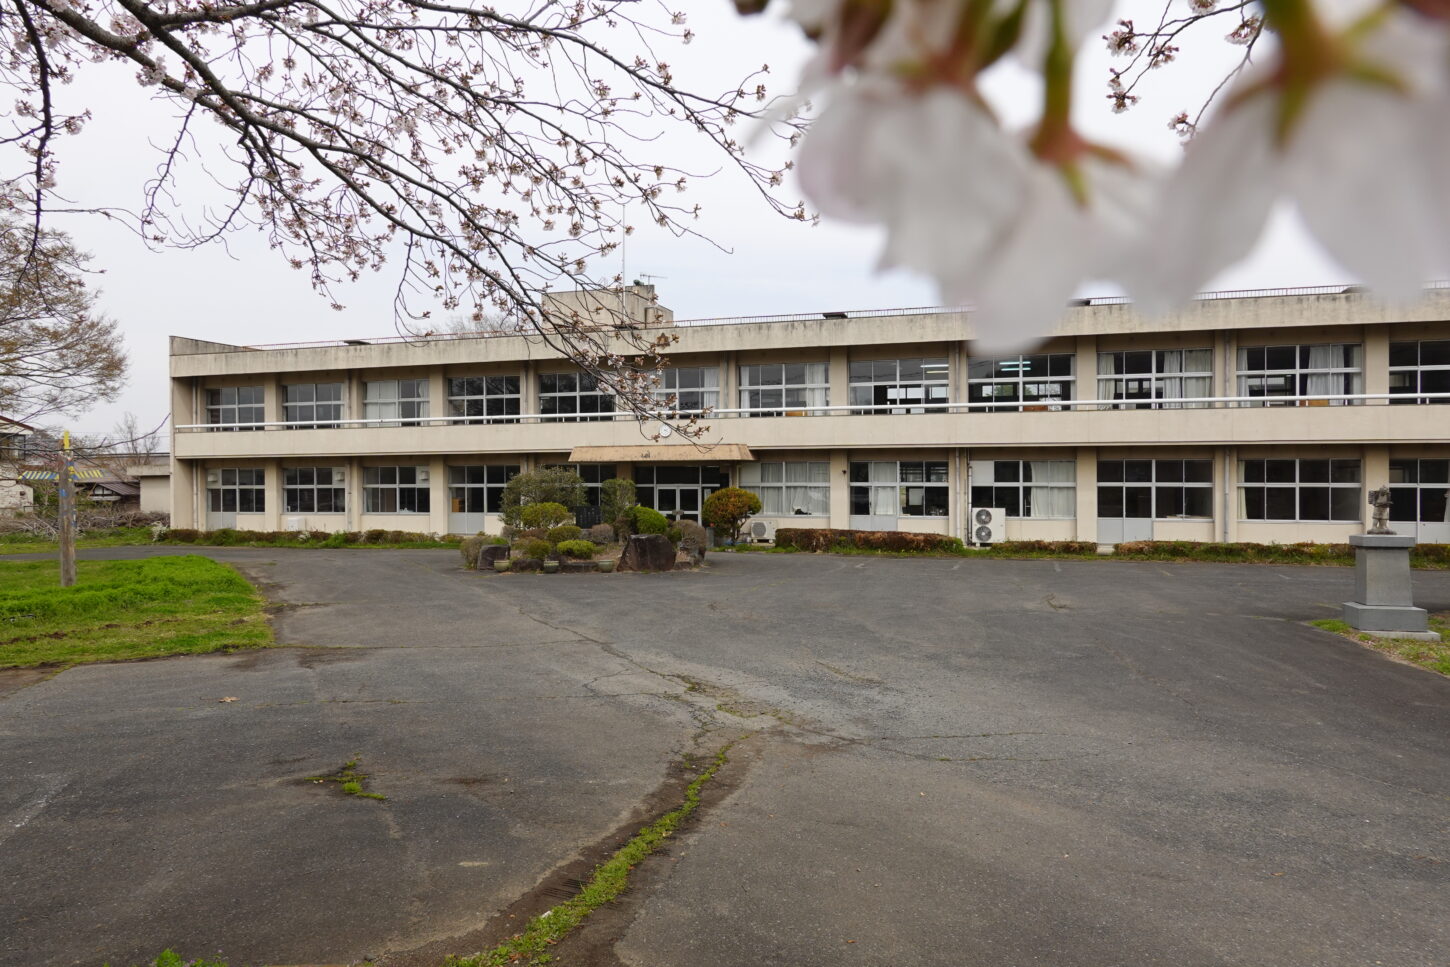 2021年3月25日の学校スタジオの桜咲く・桜と学校イメージ